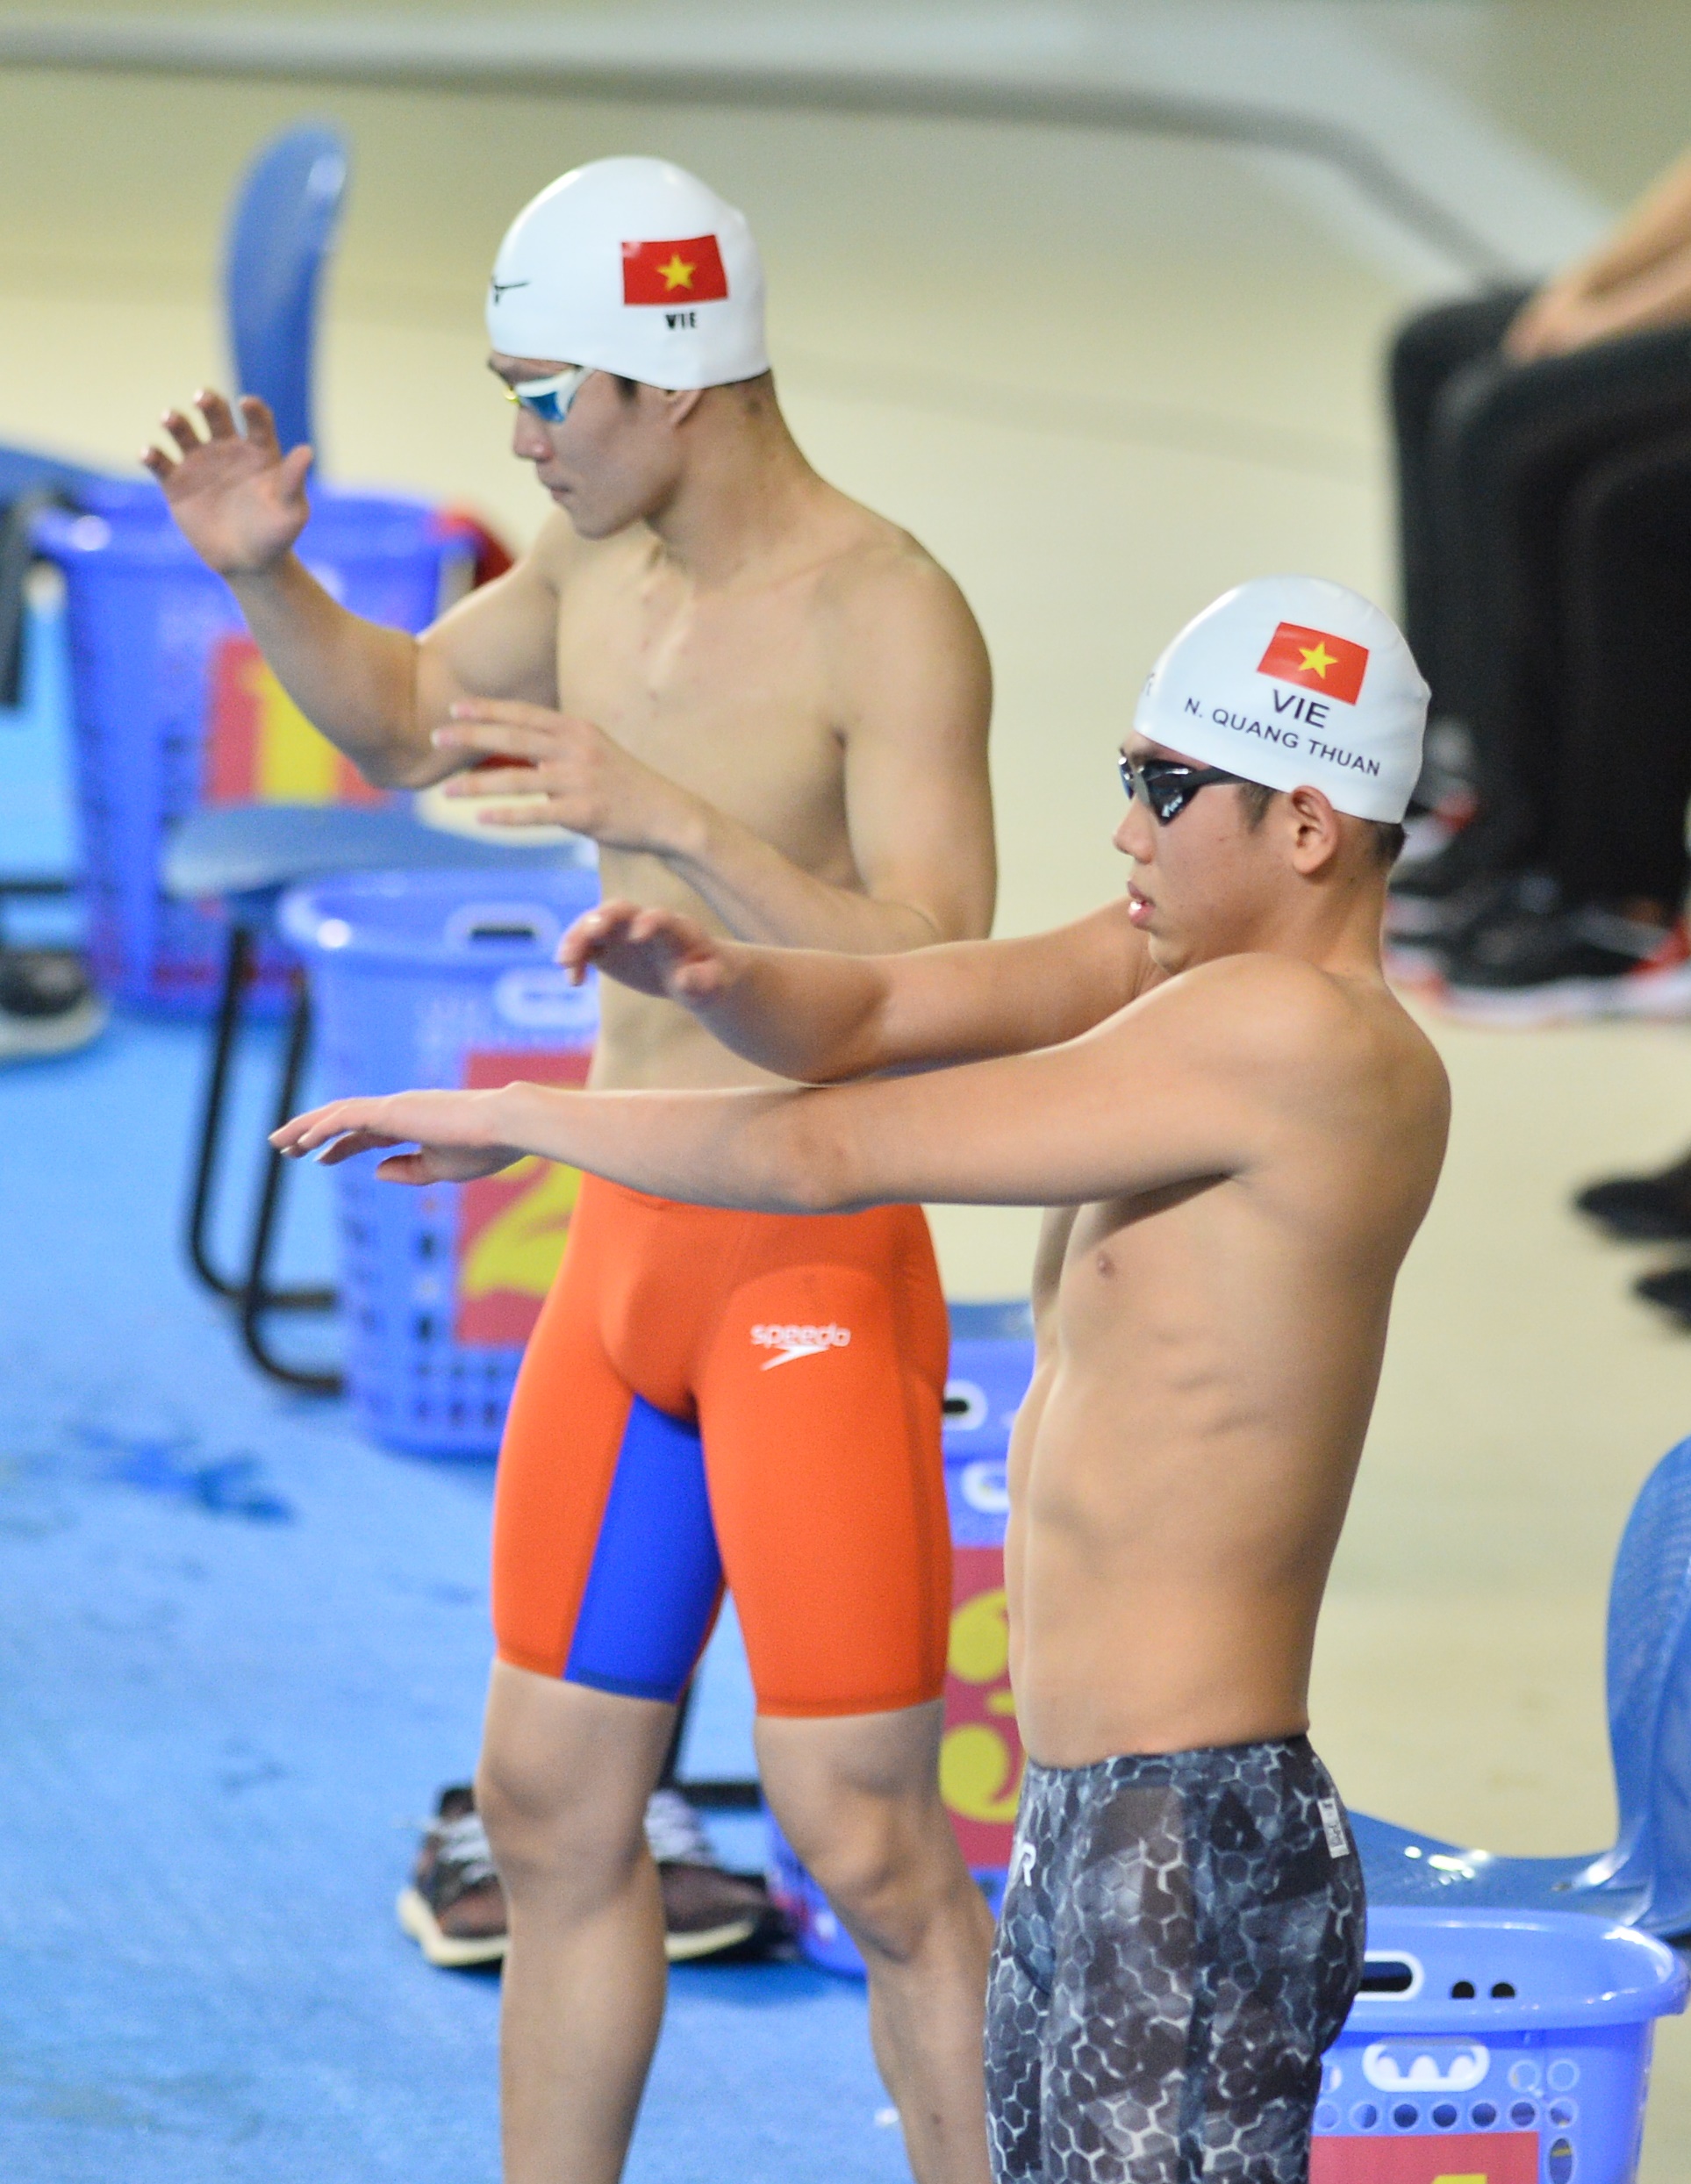 Khoảnh khắc bùng nổ của kỷ lục gia SEA Games Trần Hưng Nguyên, mang về huy chương vàng cho bơi Việt Nam - Ảnh 1.